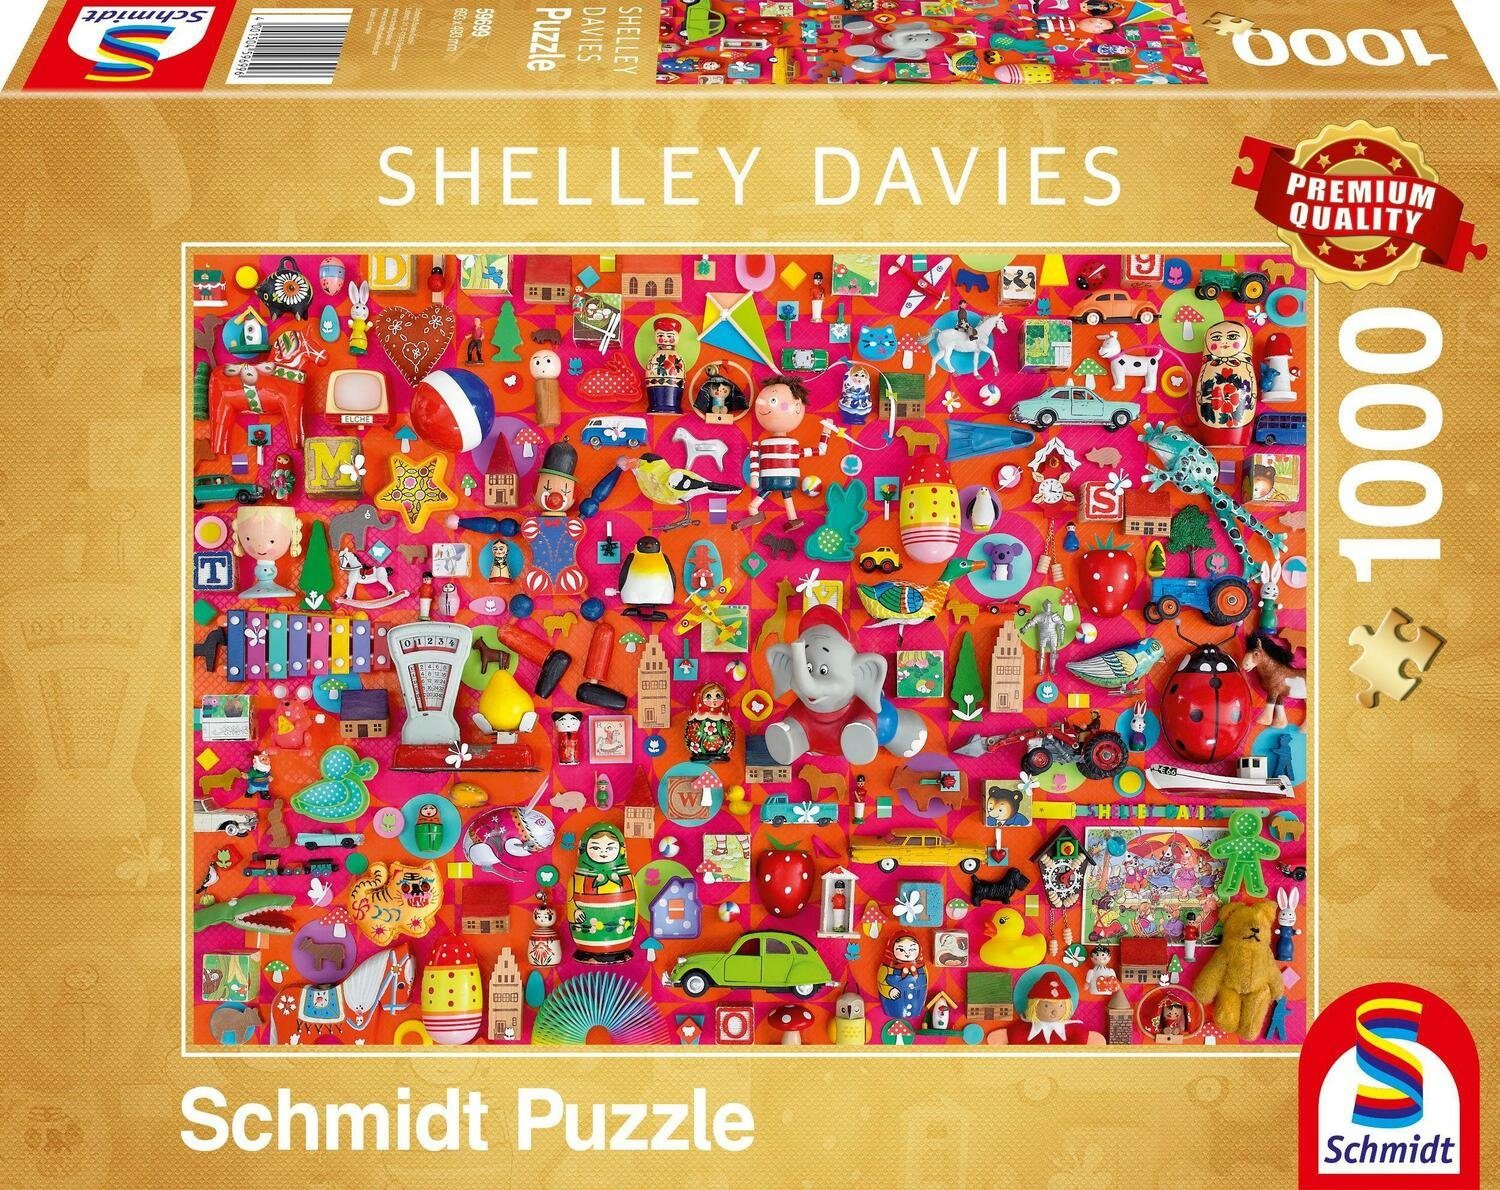 Schmidt Spiele Puzzle Vintage Spielzeug Puzzle 1.000 Teile, 1000 Puzzleteile